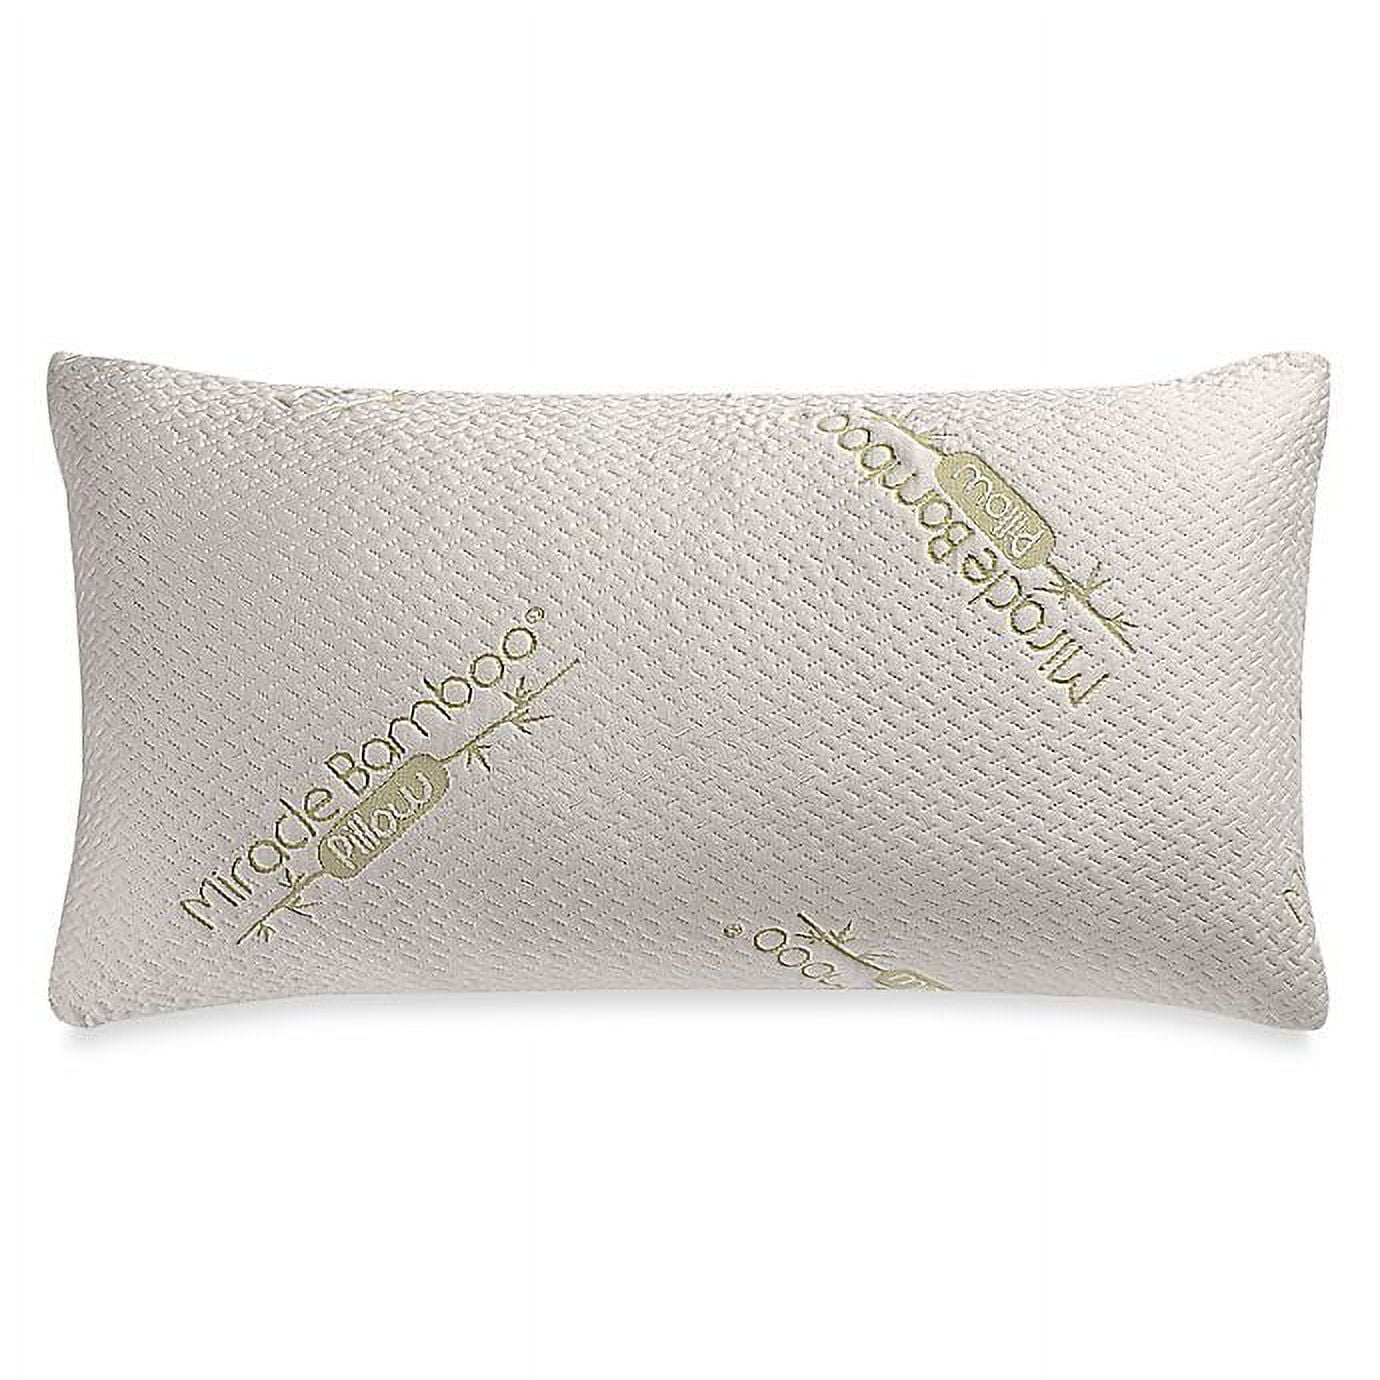 Ontel Original Miracle Bamboo Shredded Memory Foam Pillow-Deluxe King,  White 